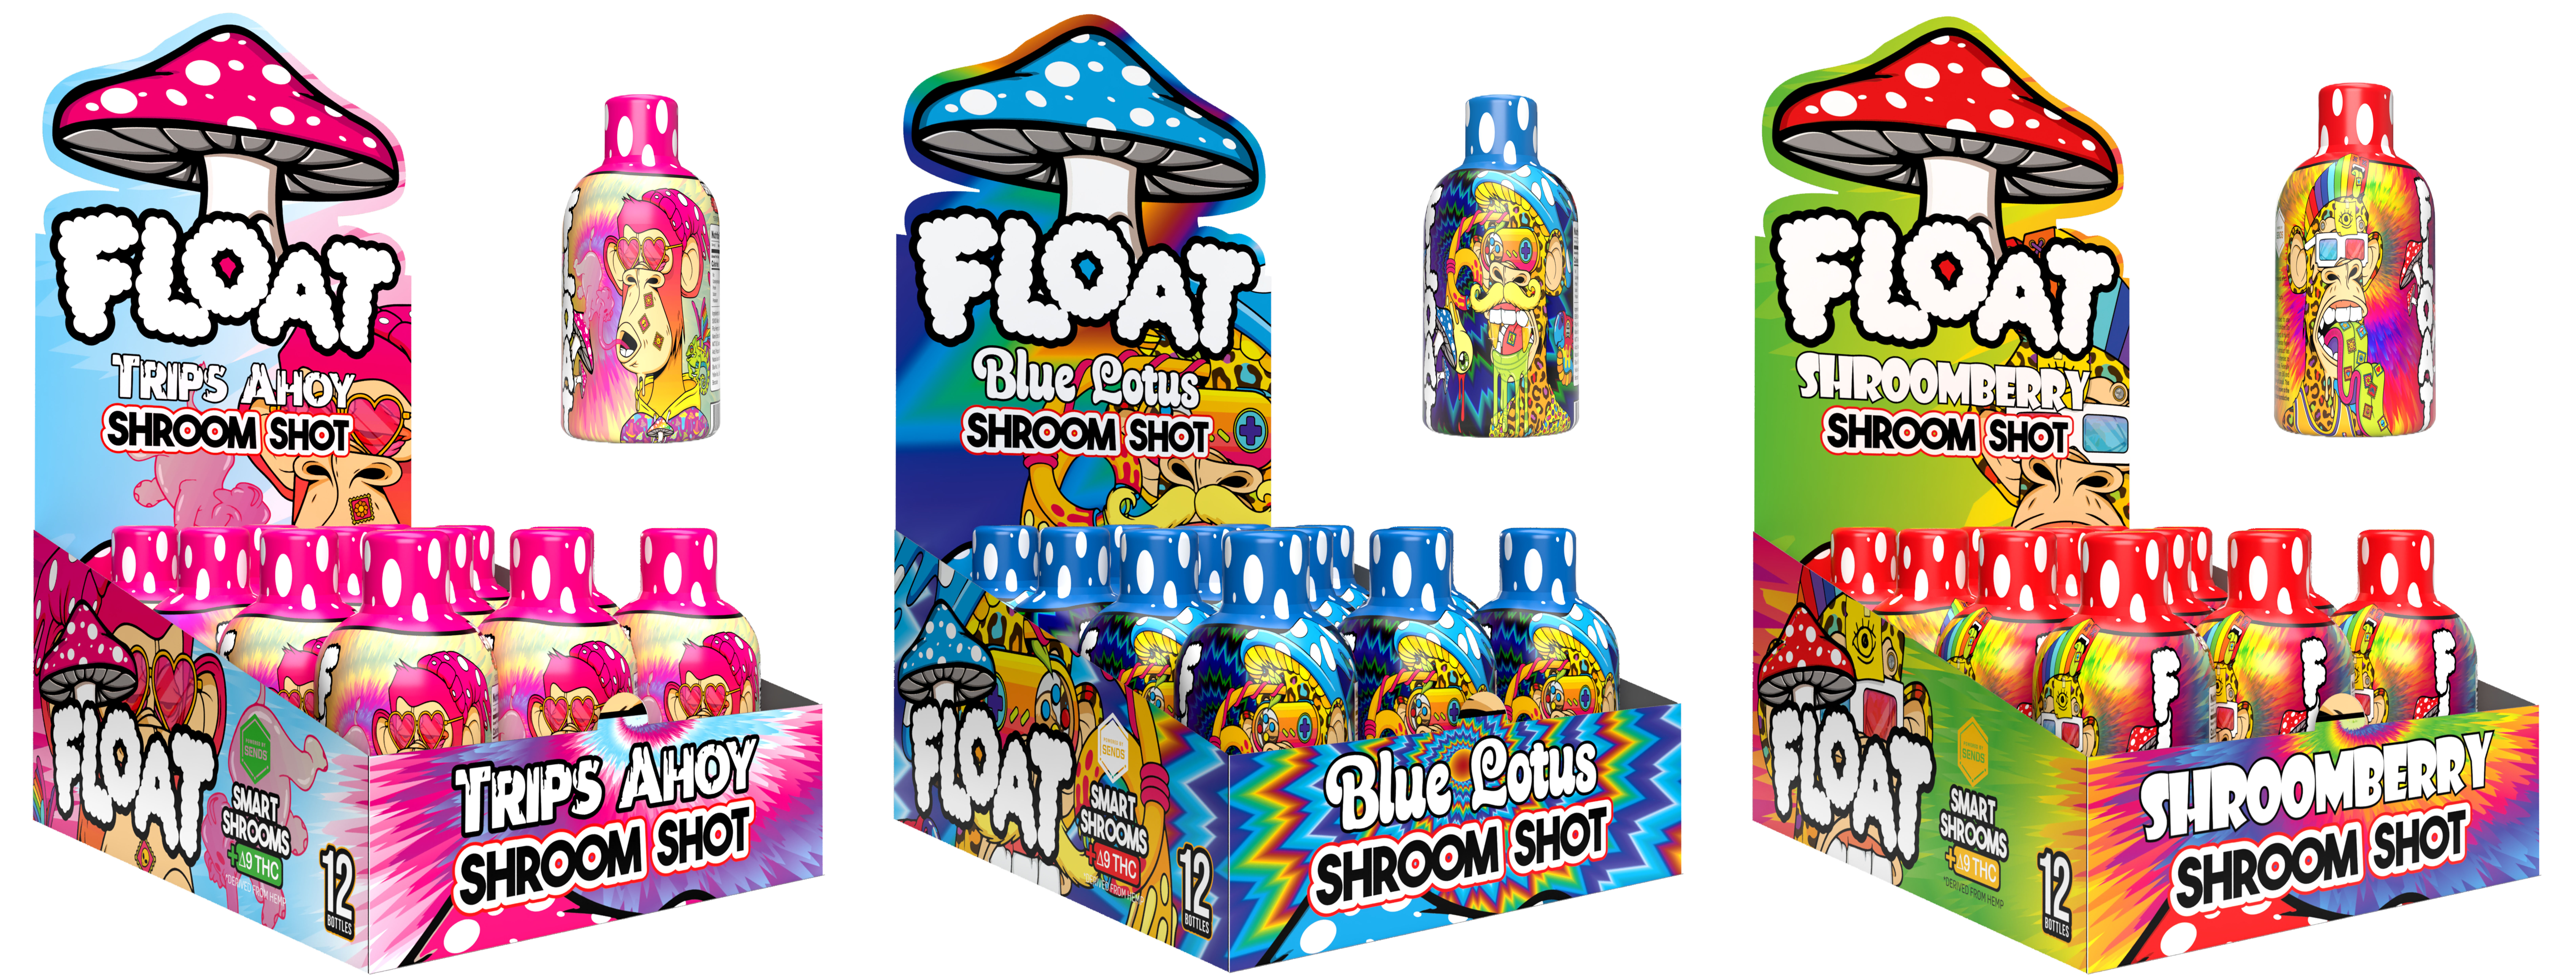 float shot bottles copy